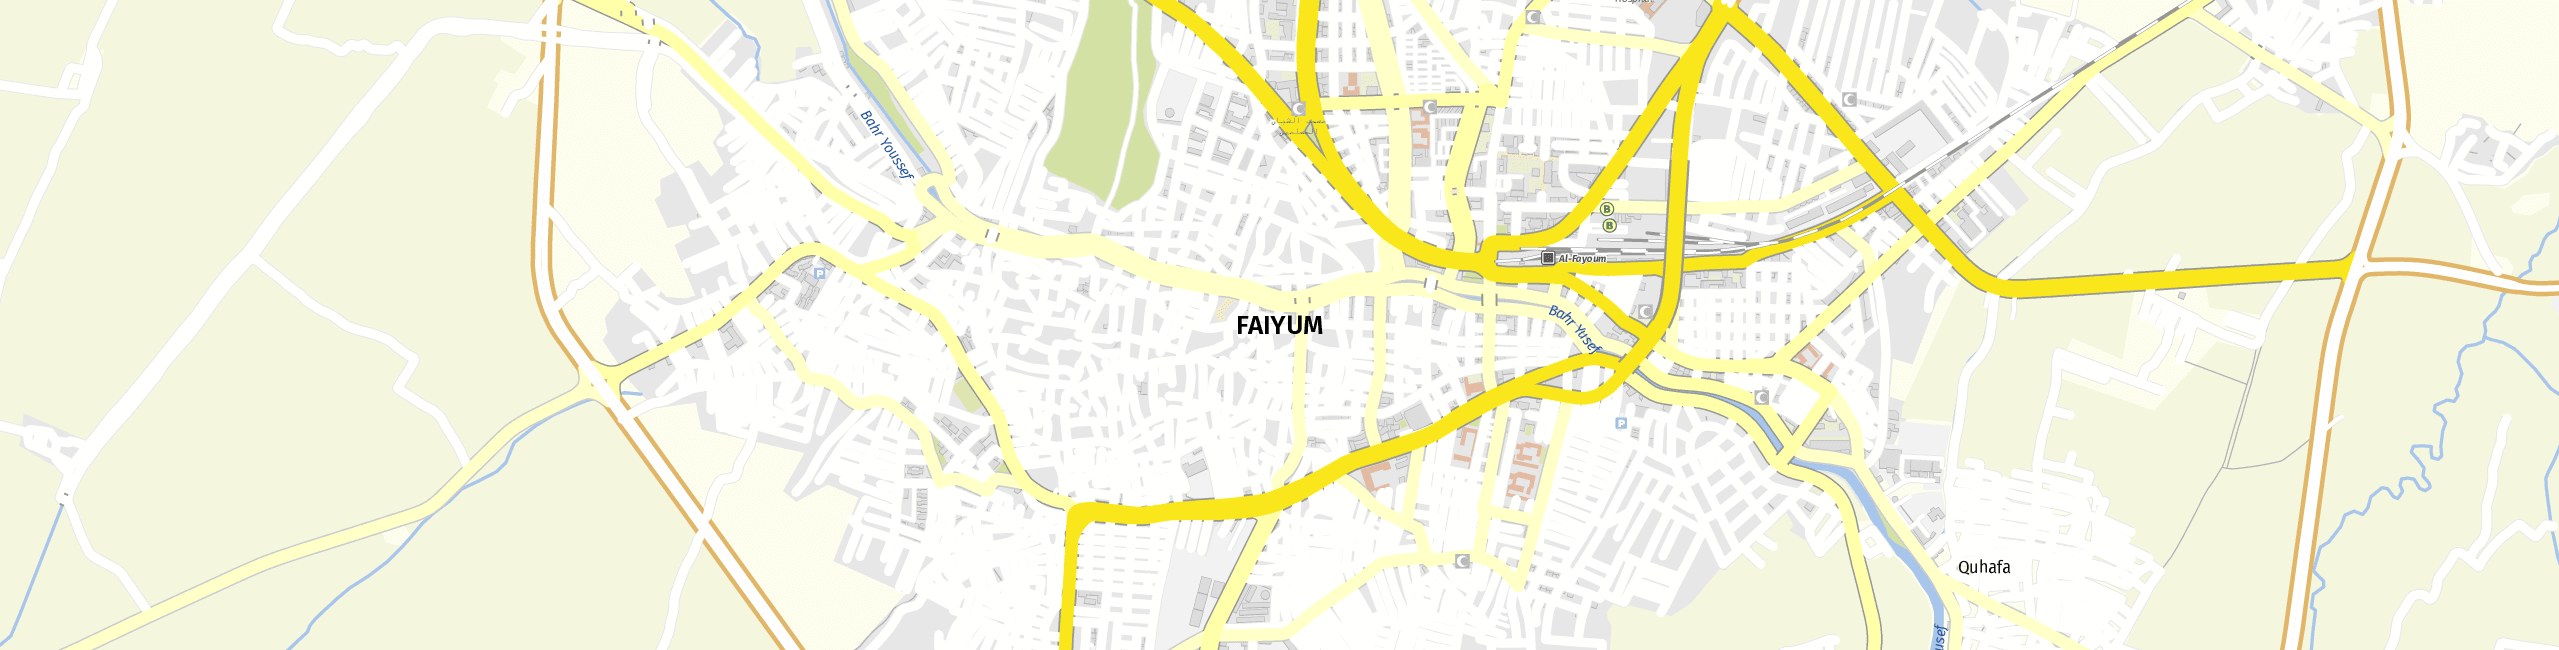 Stadtplan Faiyum zum Downloaden.